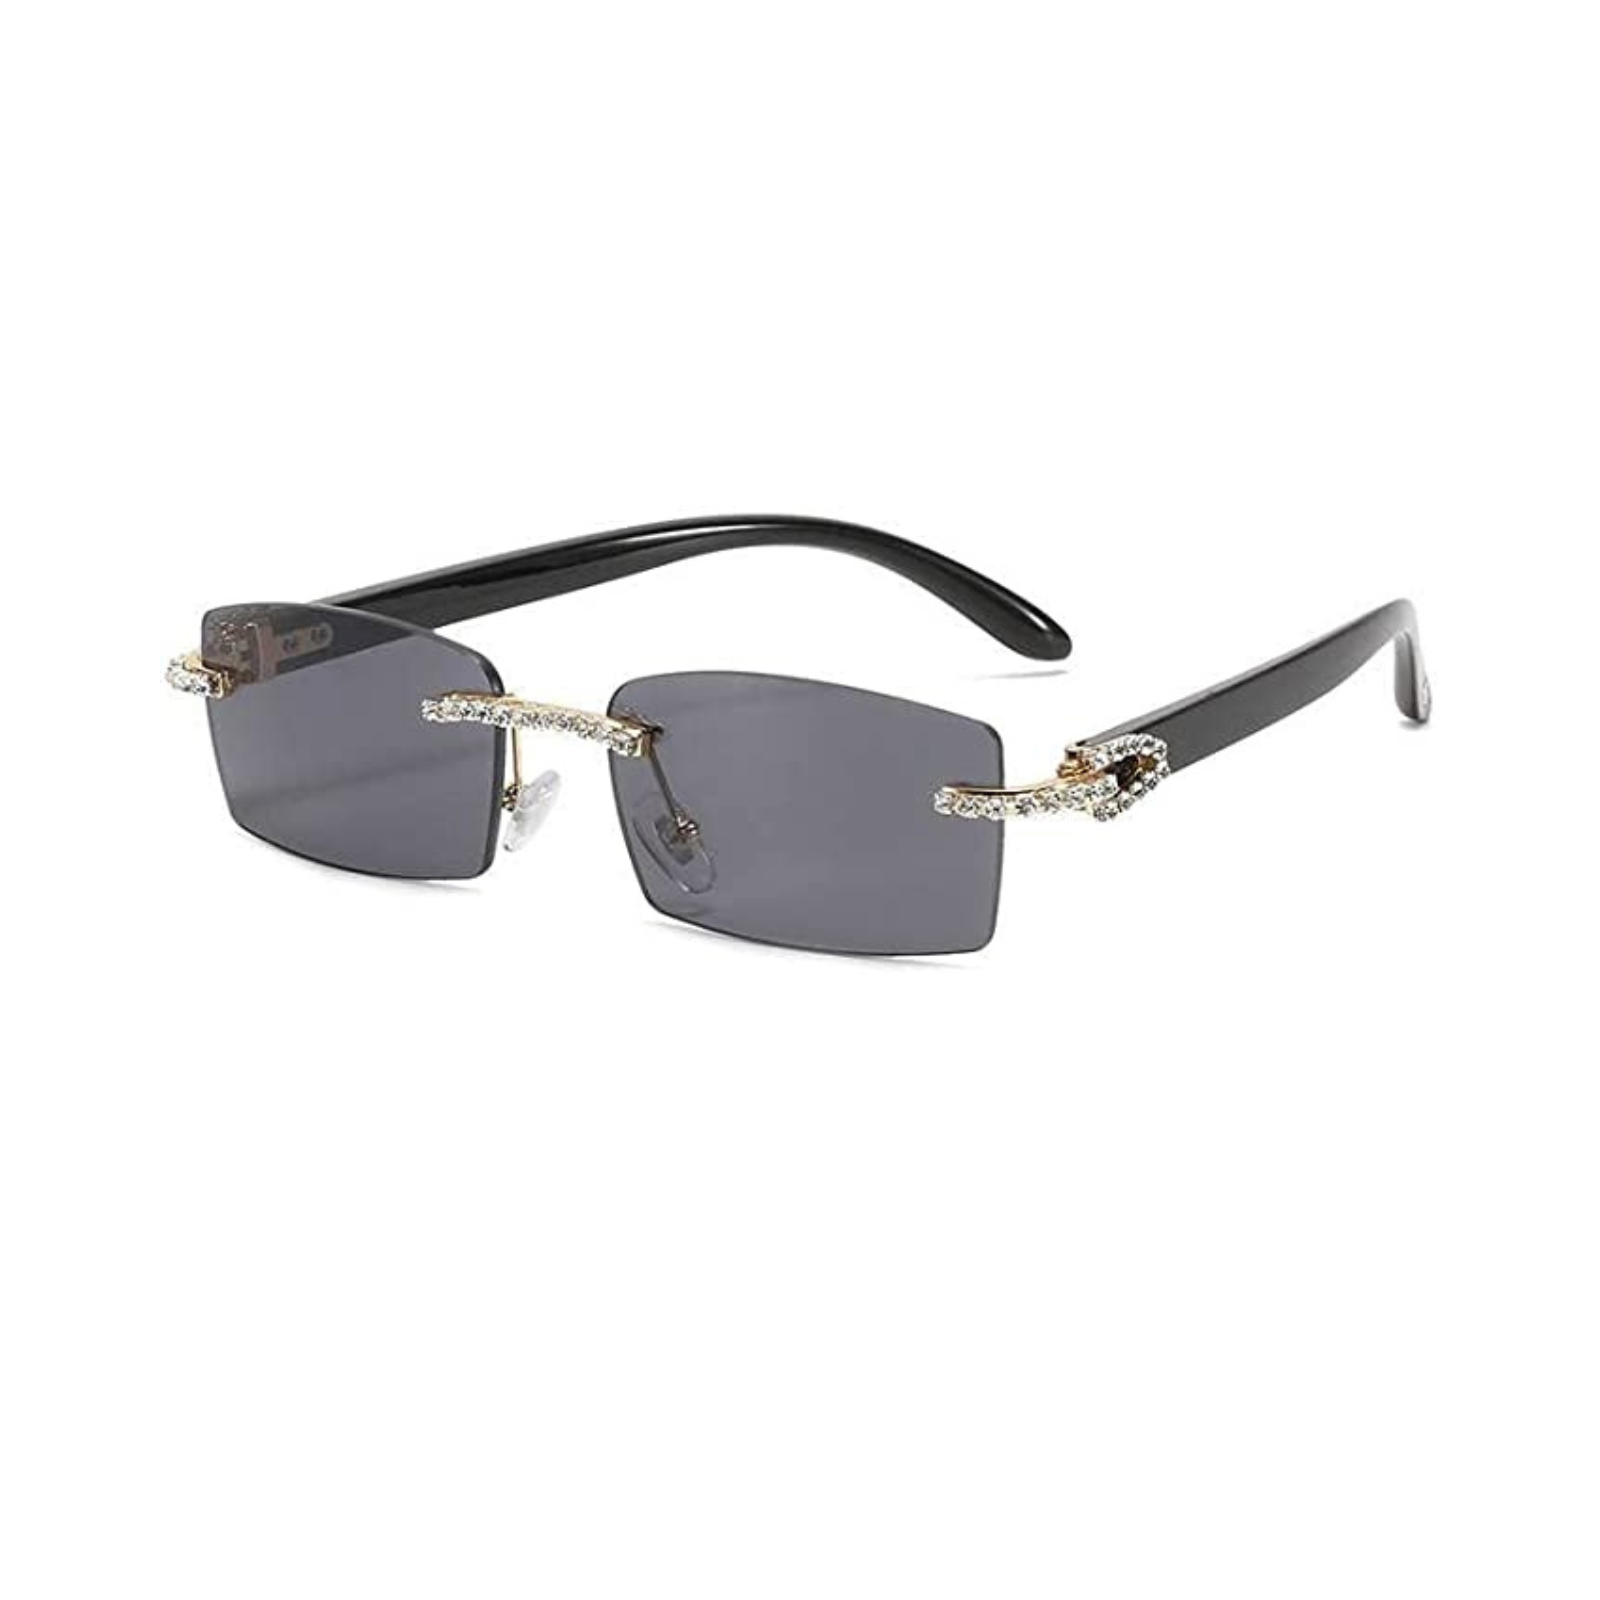 Miami Sunglasses (Black)